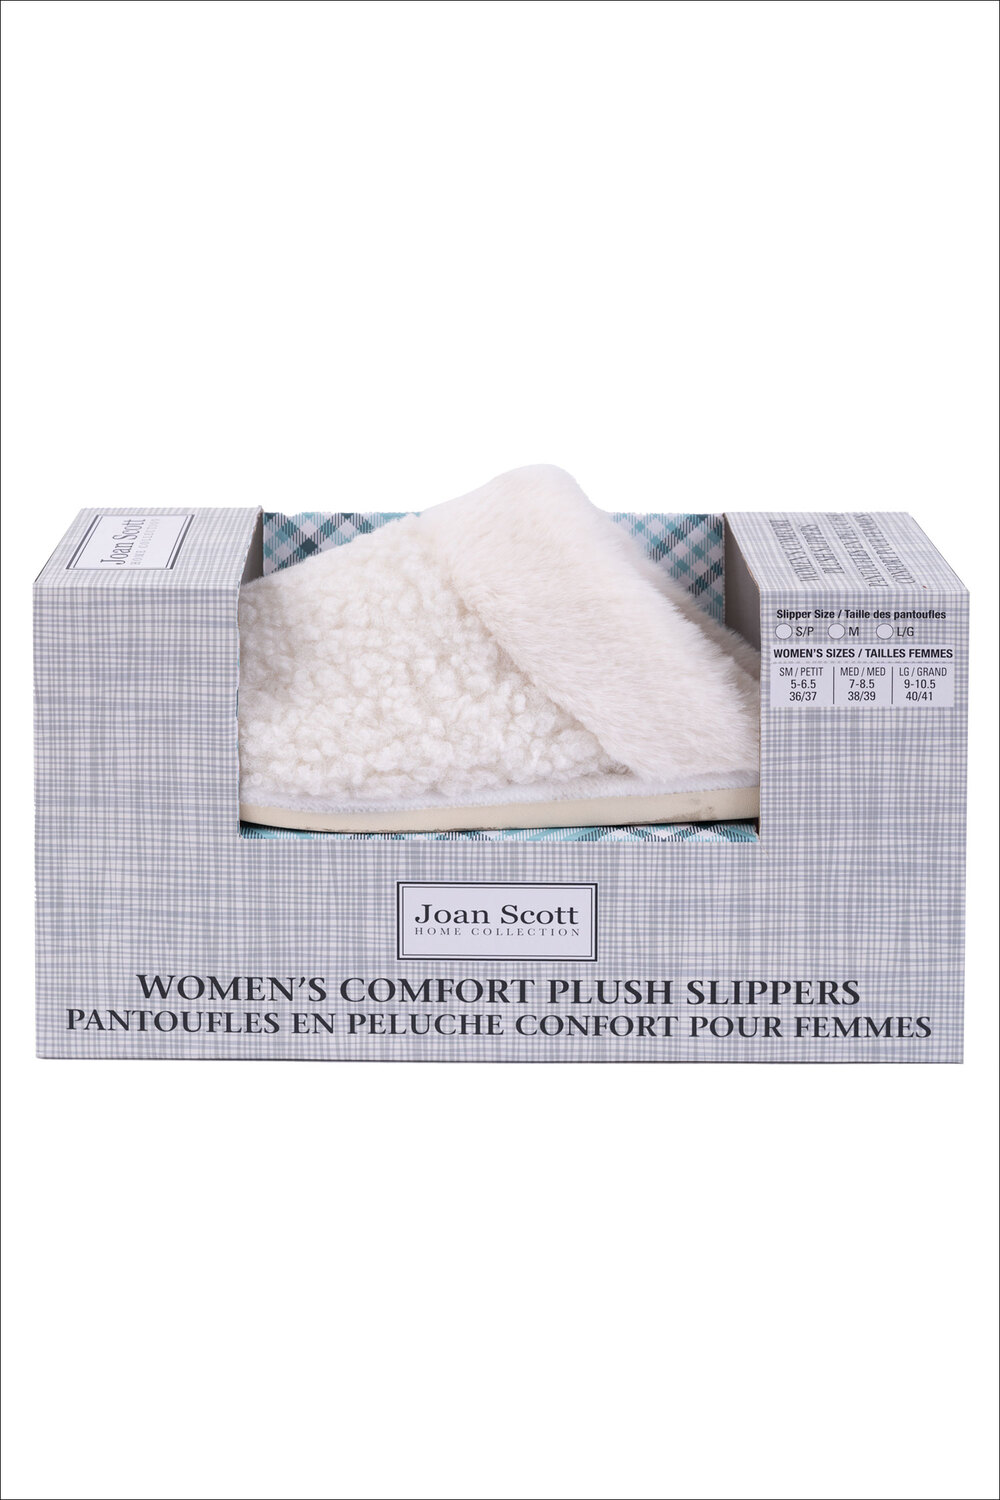 Joan Scott - Boxed comfort plush slippers - White